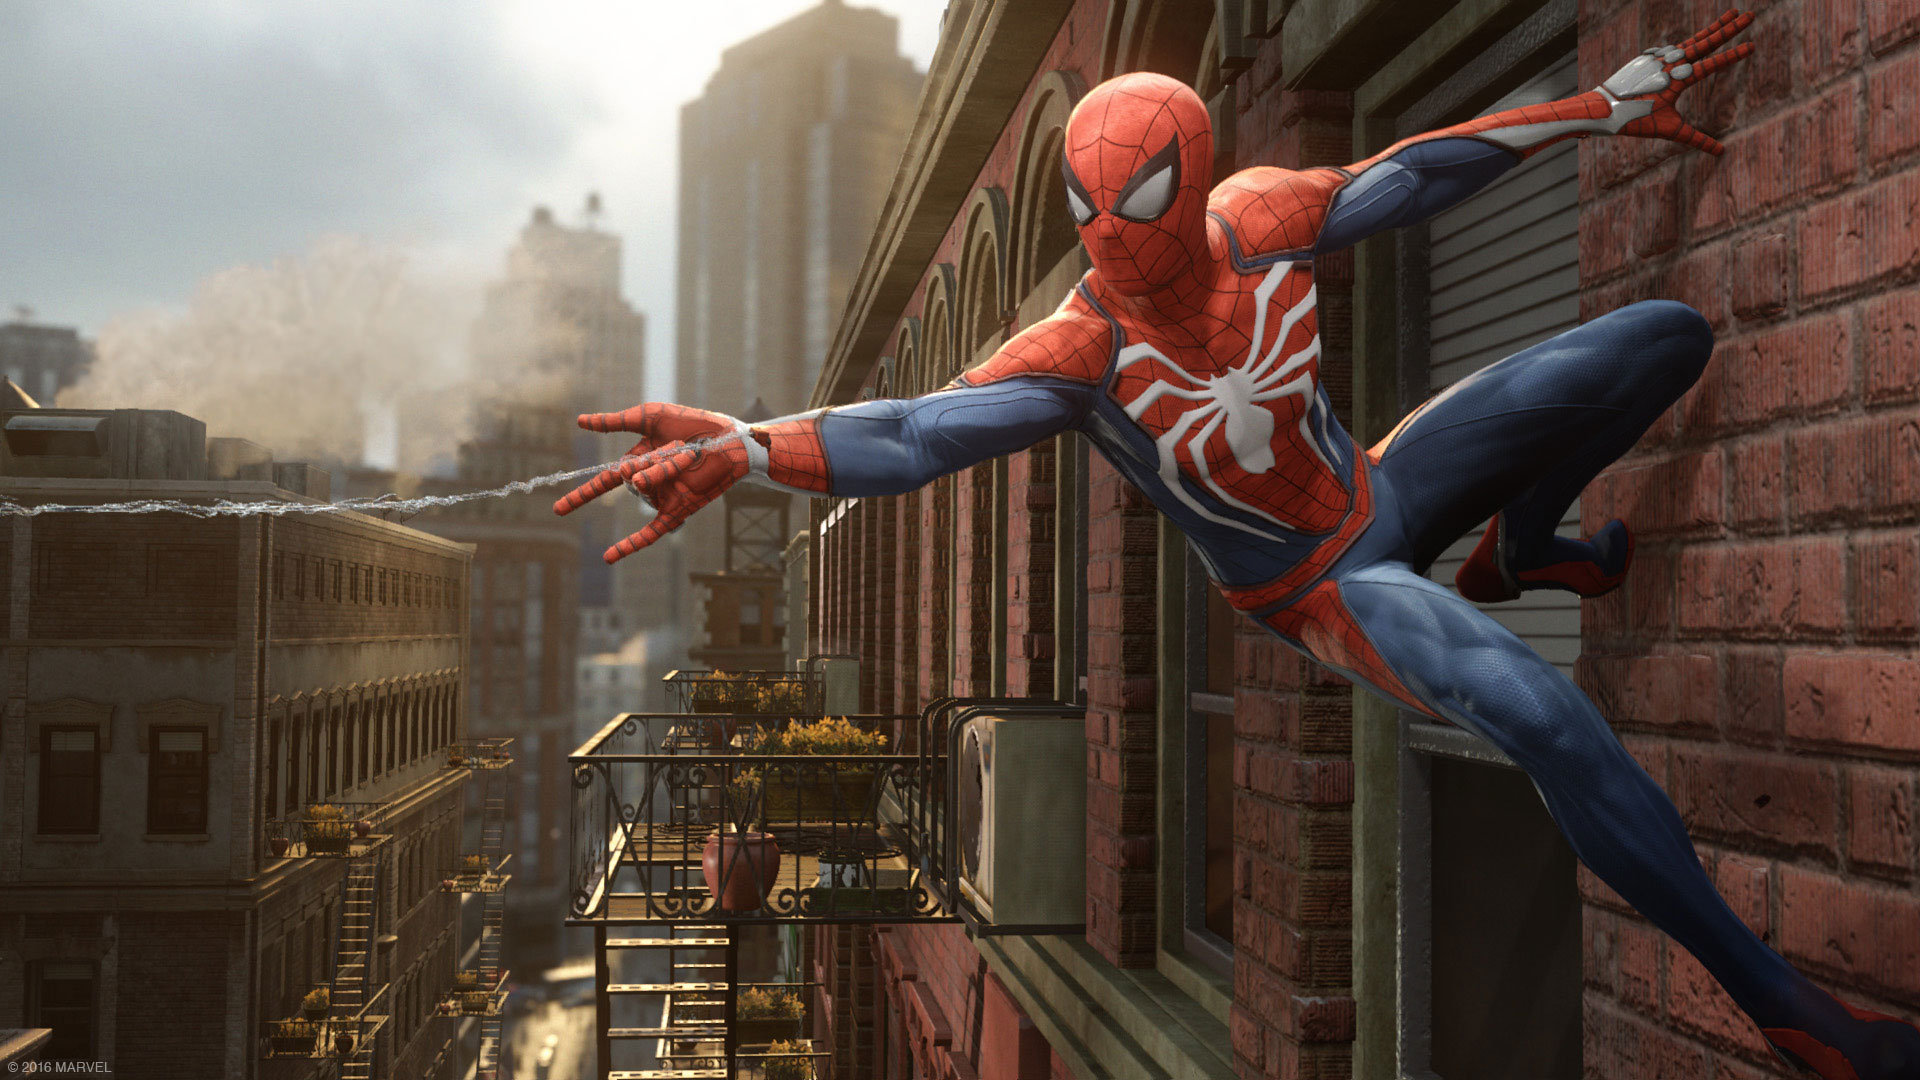 Spider-Man oyununda, kendimize yeni kıyafet ve teknolojiler yapabileceğiz